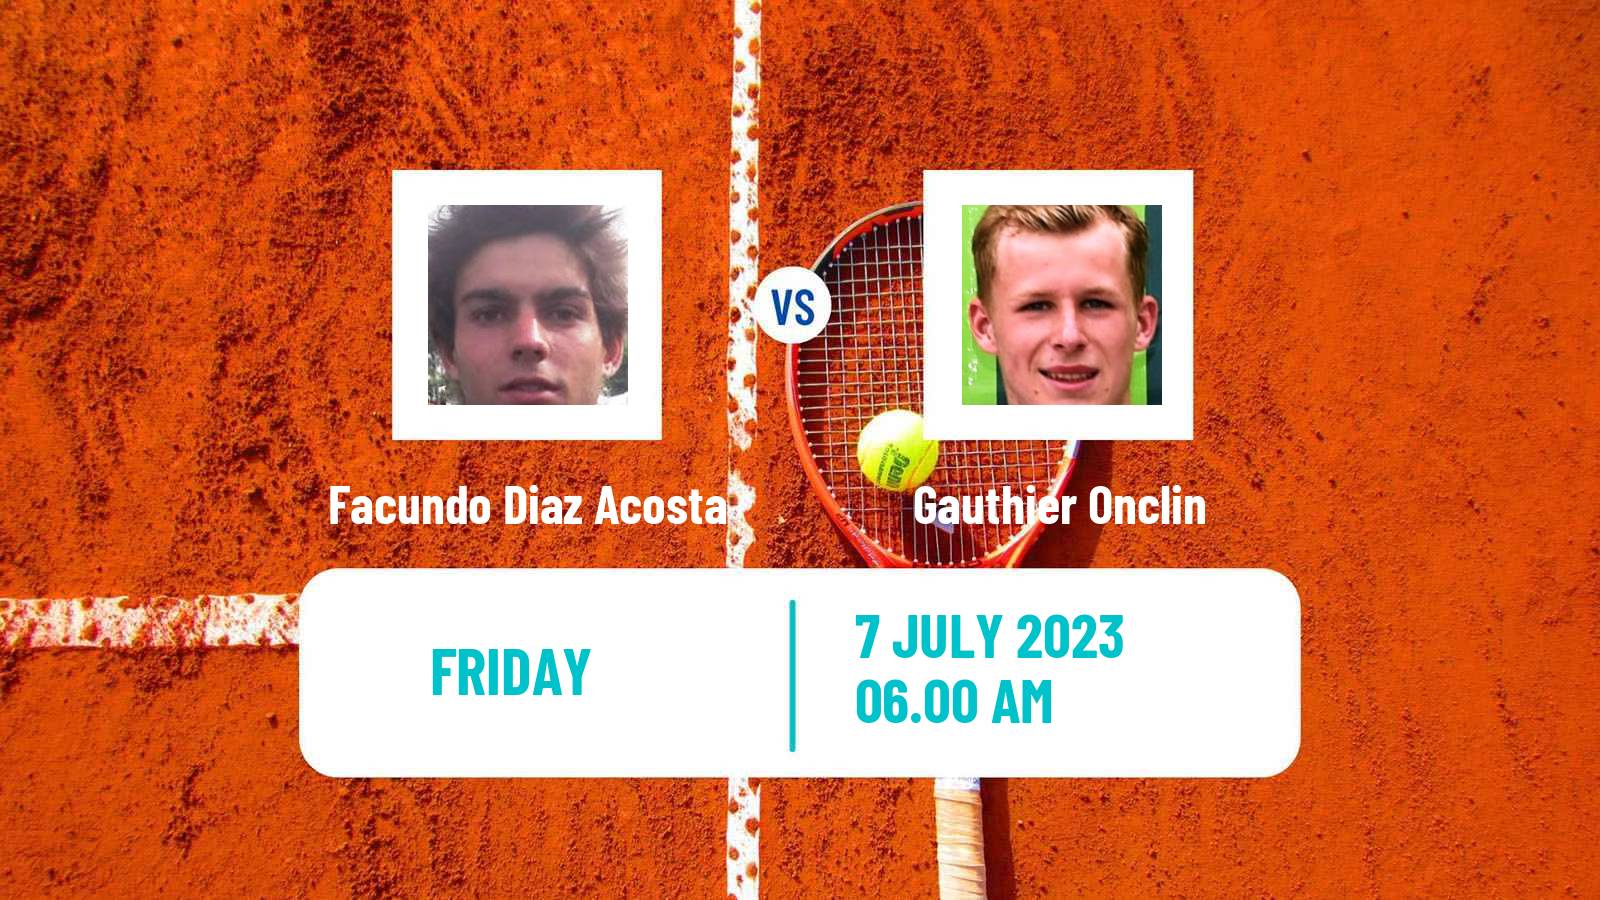 Tennis Milan Challenger Men Facundo Diaz Acosta - Gauthier Onclin